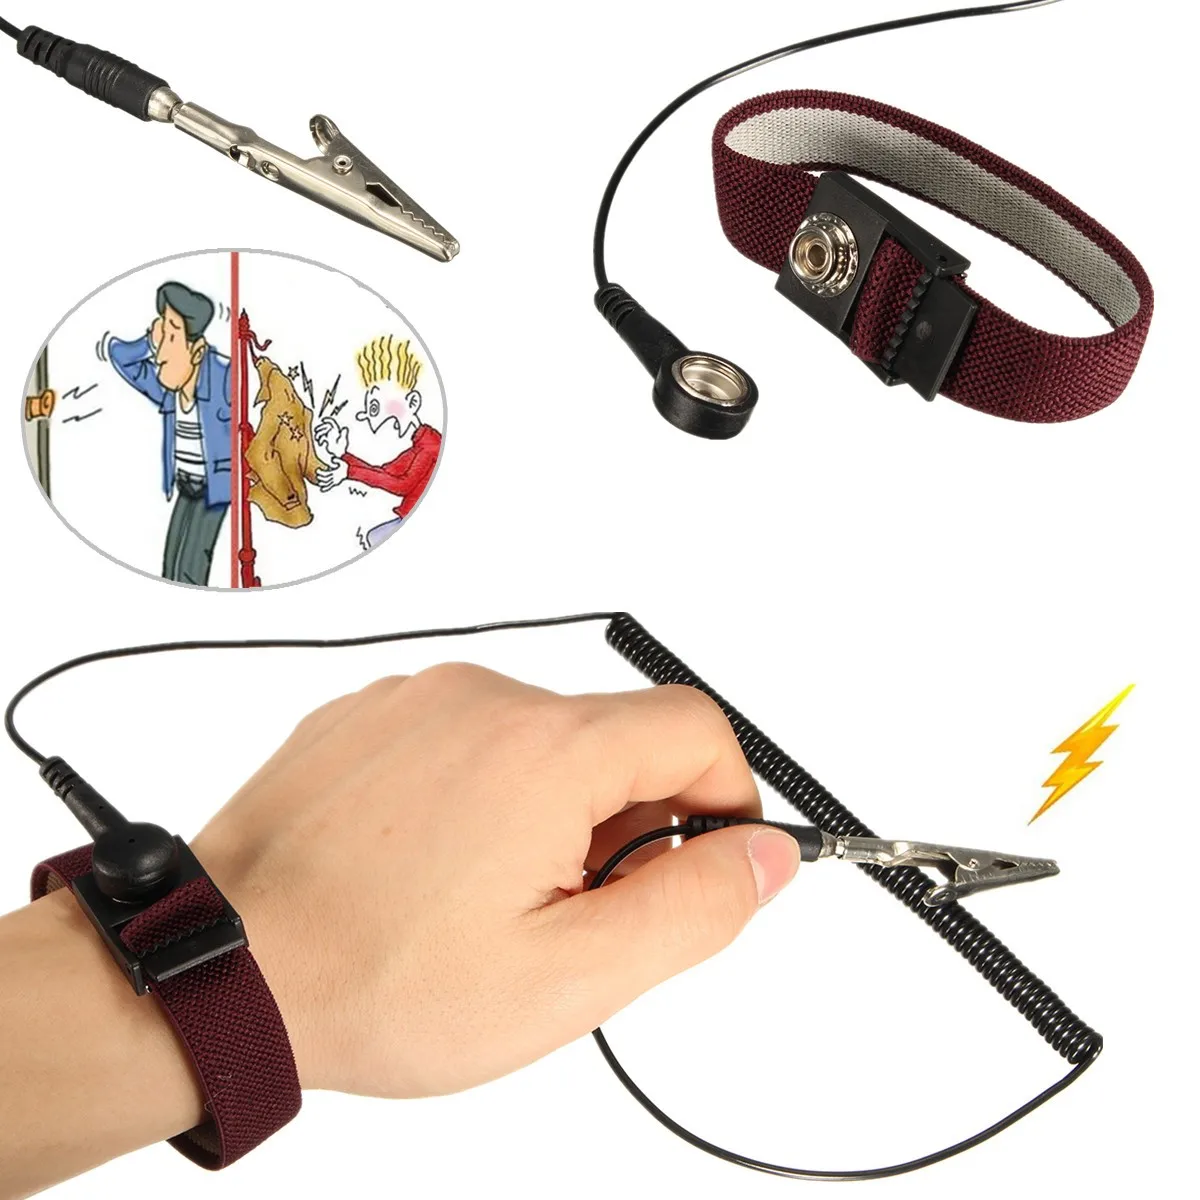 

6 футов Антистатический браслет ESD наручный ремешок беспроводной Антистатический беспроводной зажим разрядные кабели для ремонта электроники рабочий инструмент